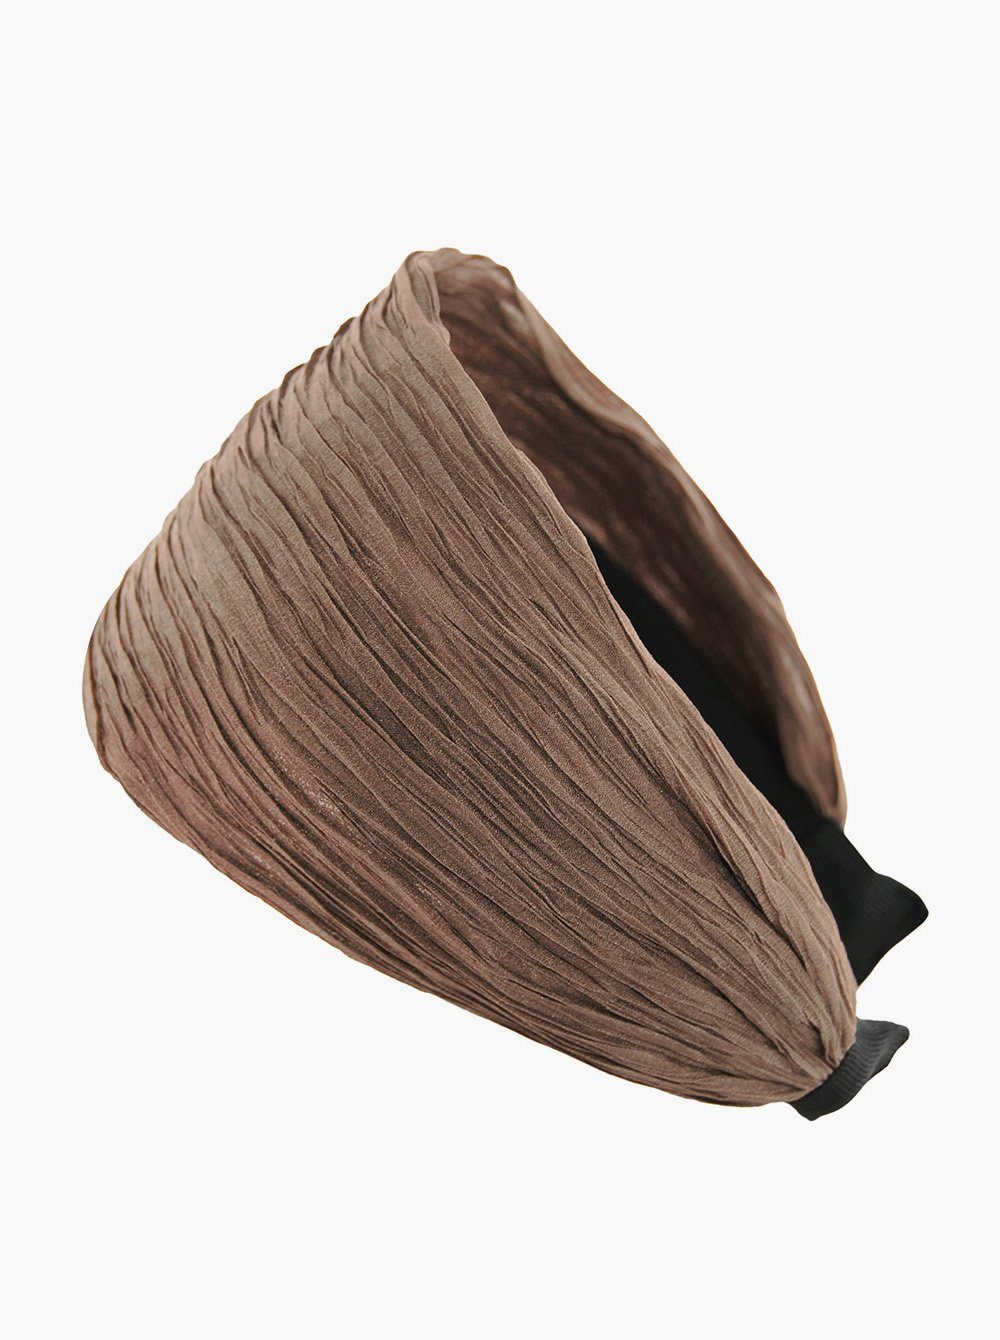 axy Haarreif Breiter Haarreif in Tuchoptik Wunderschön, Damen Breiter Haarreif (Plissierter Stoff) Haarband Haarreifen Braun